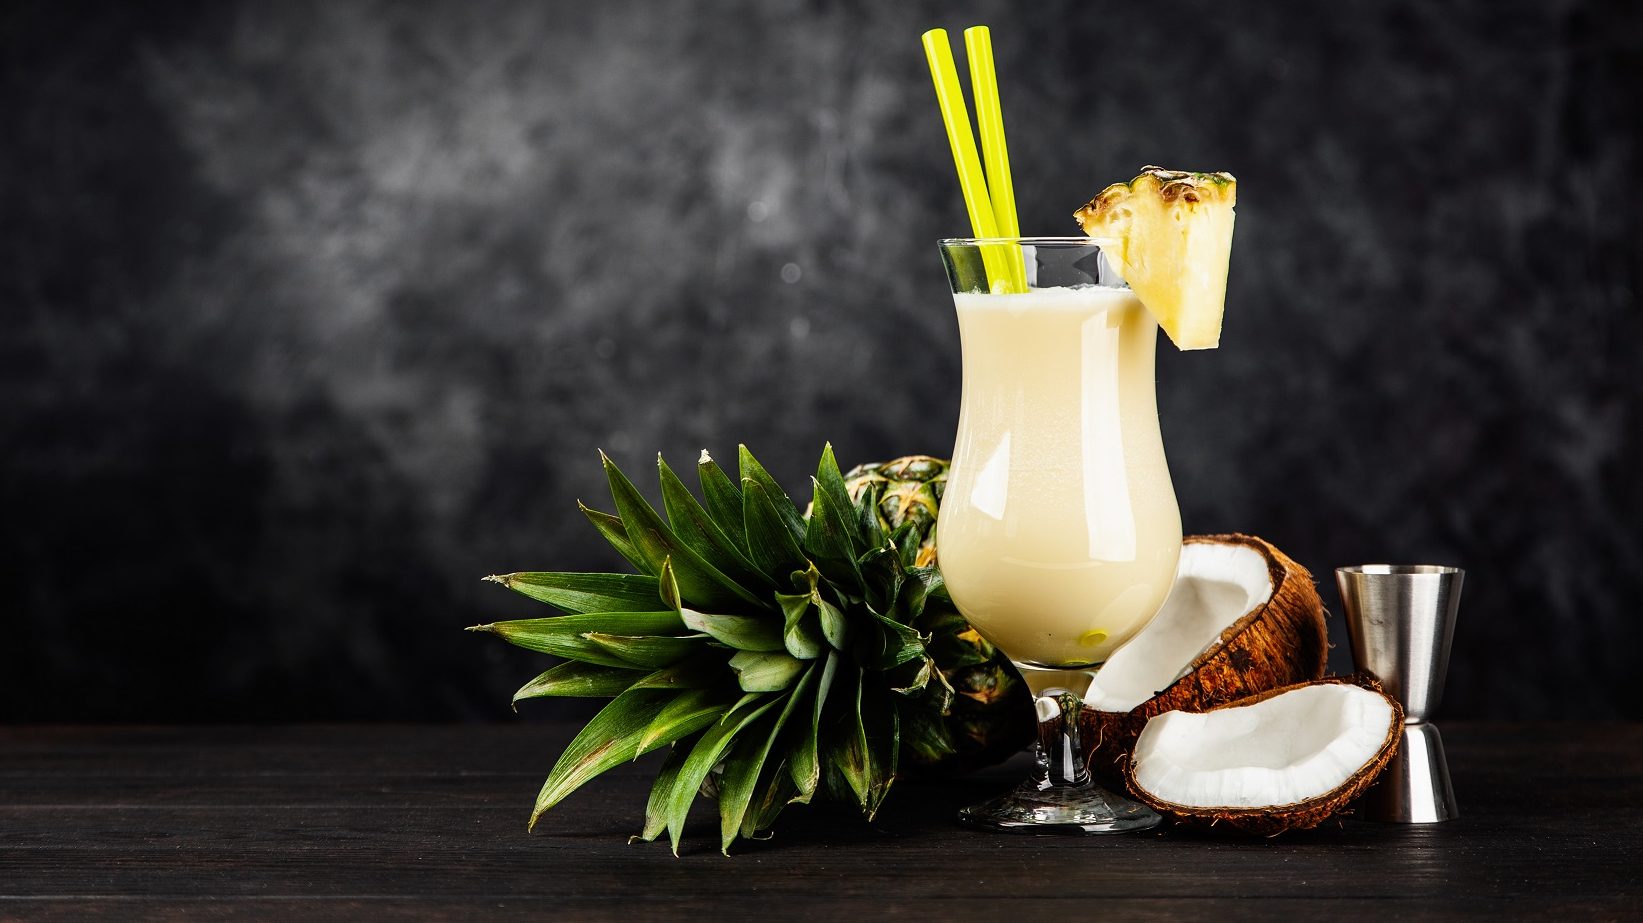 Die Low Carb-Pina Colada stilecht im Glas angerichtet, mit Ananas am Rand verziert und die Kokosnuss als Deko im Hintergrund.